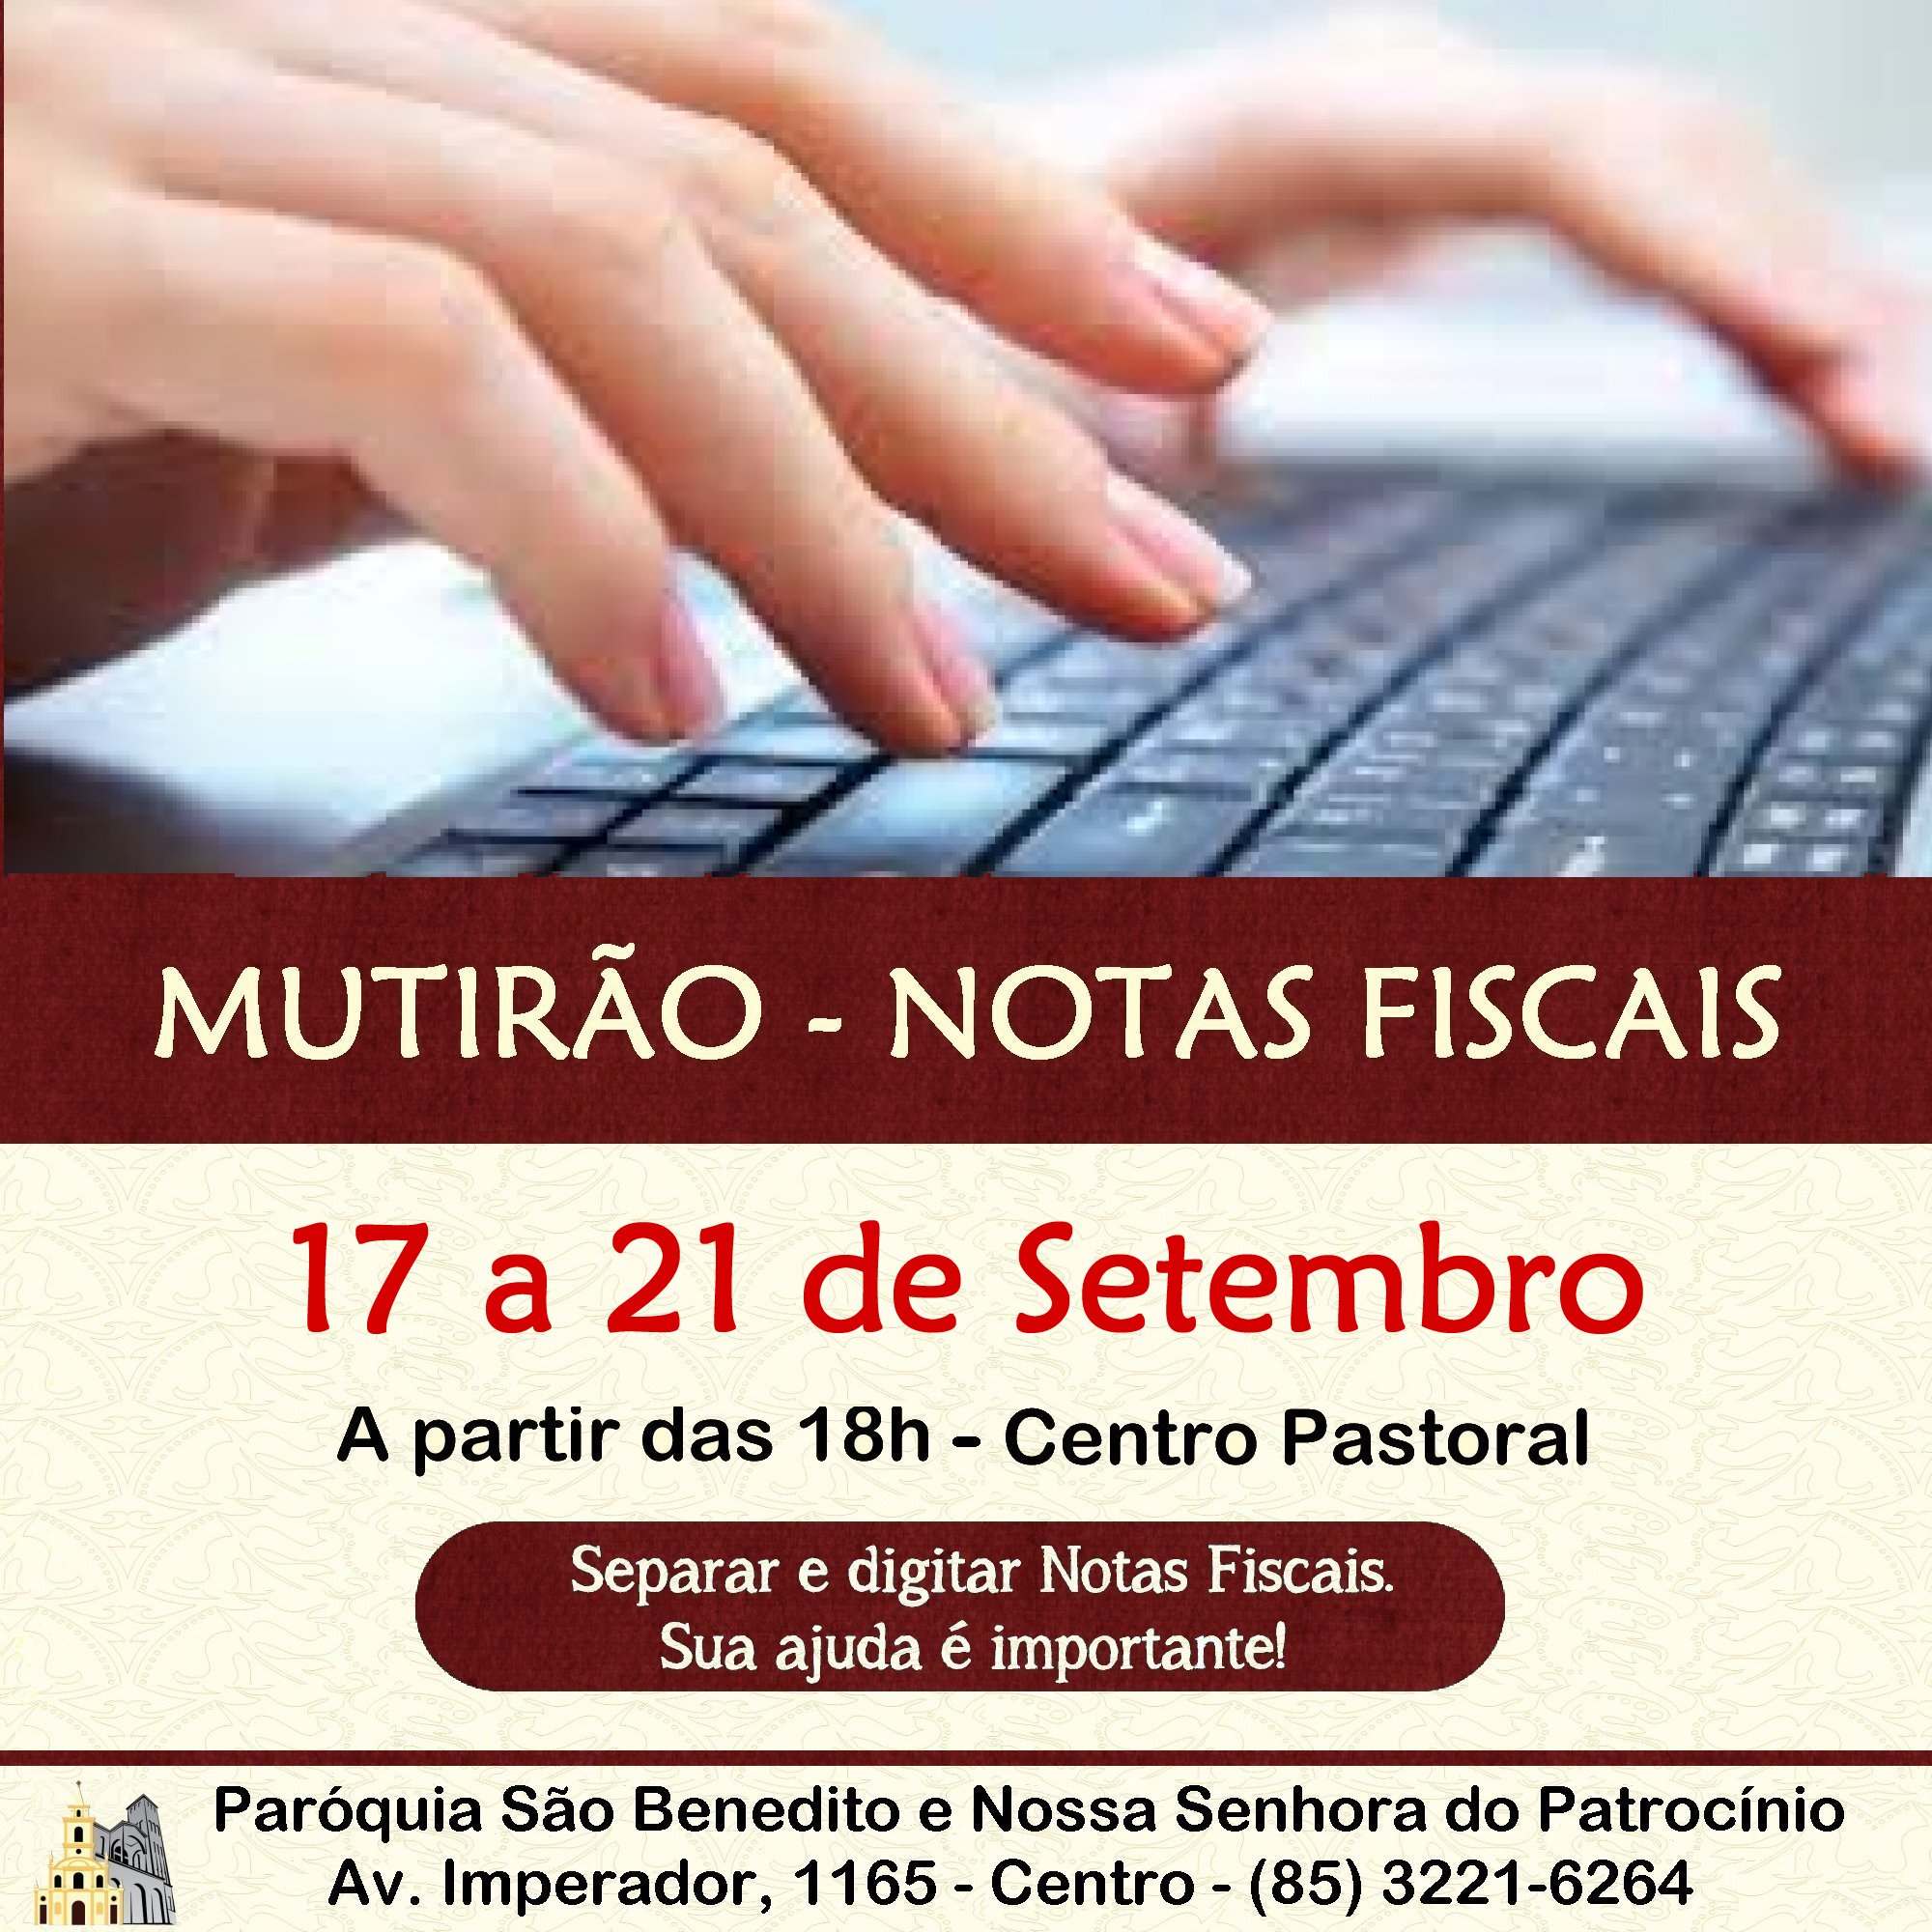 Mutirão Solidário para triagem e digitação de Notas Fiscais de 17 a 21/09. Participe!